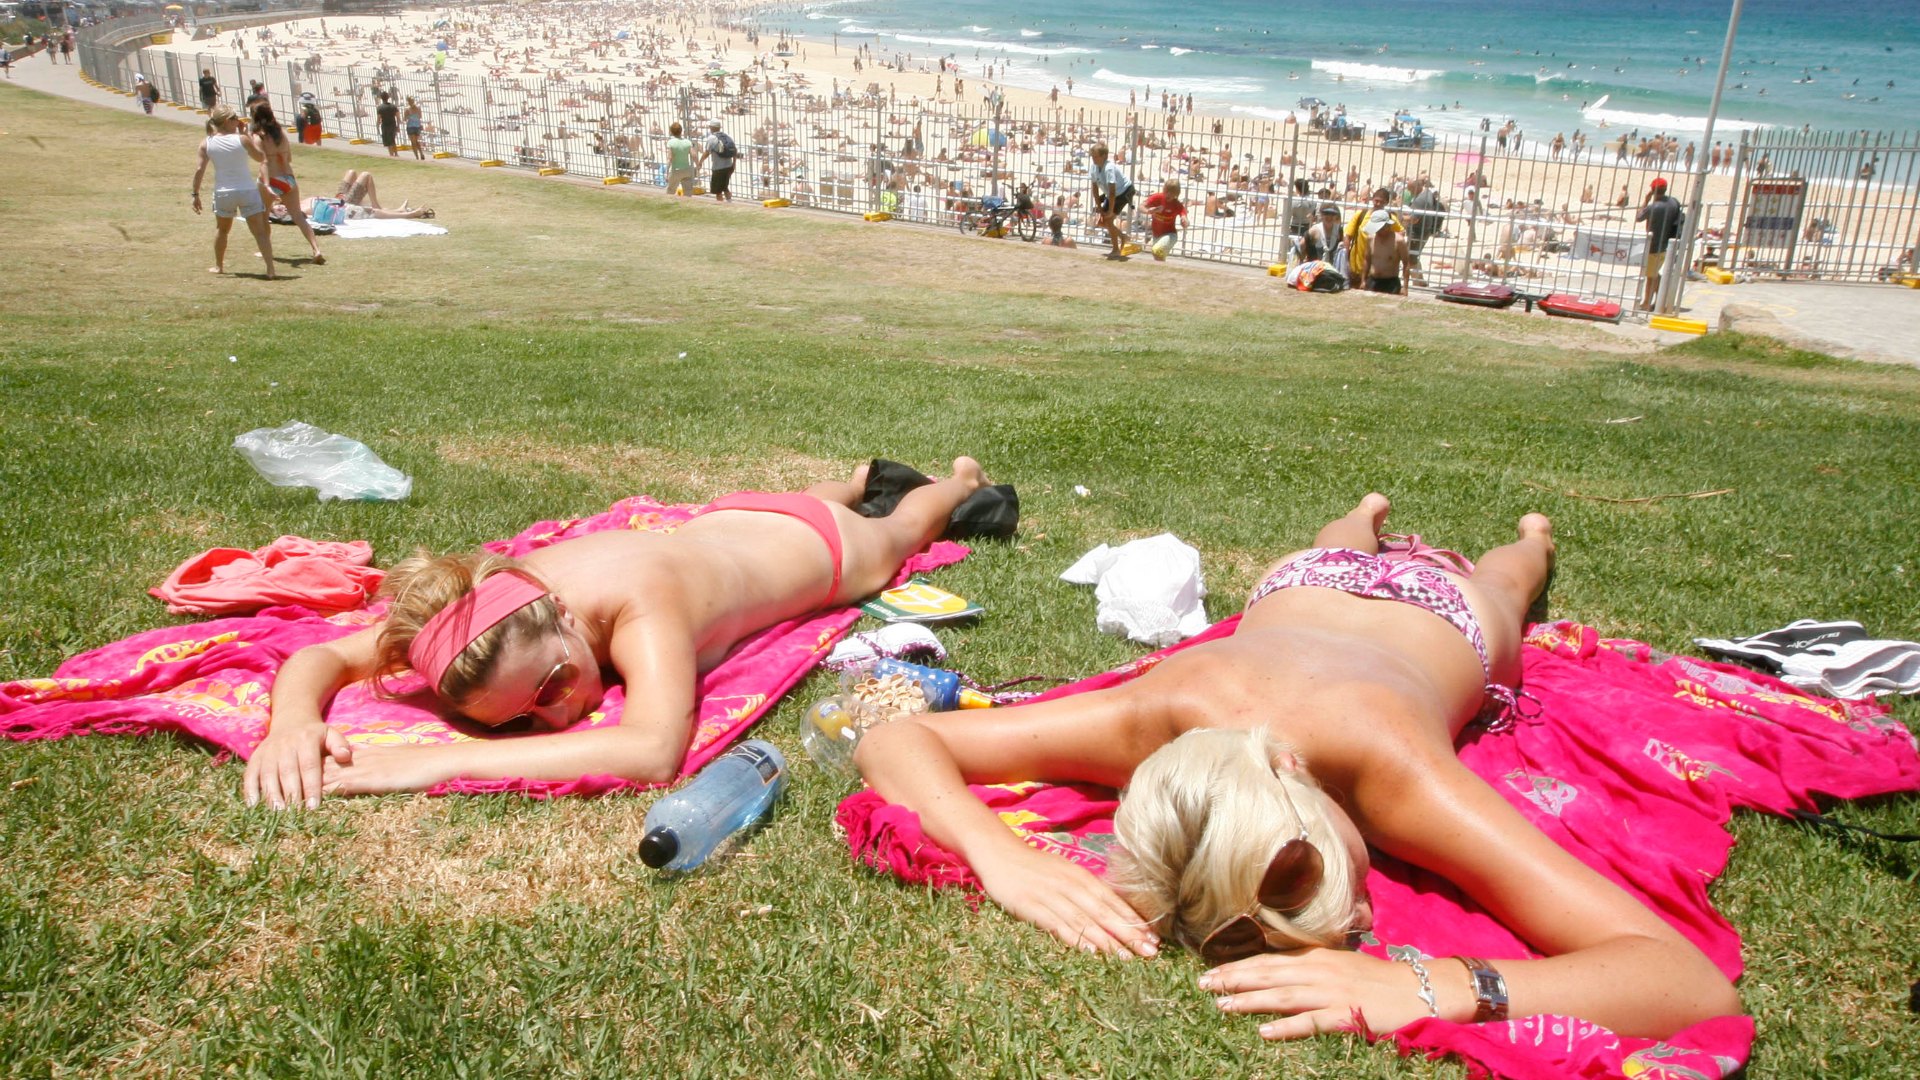 Las españolas hacen más «topless» y nudismo que las mujeres de otros grandes países